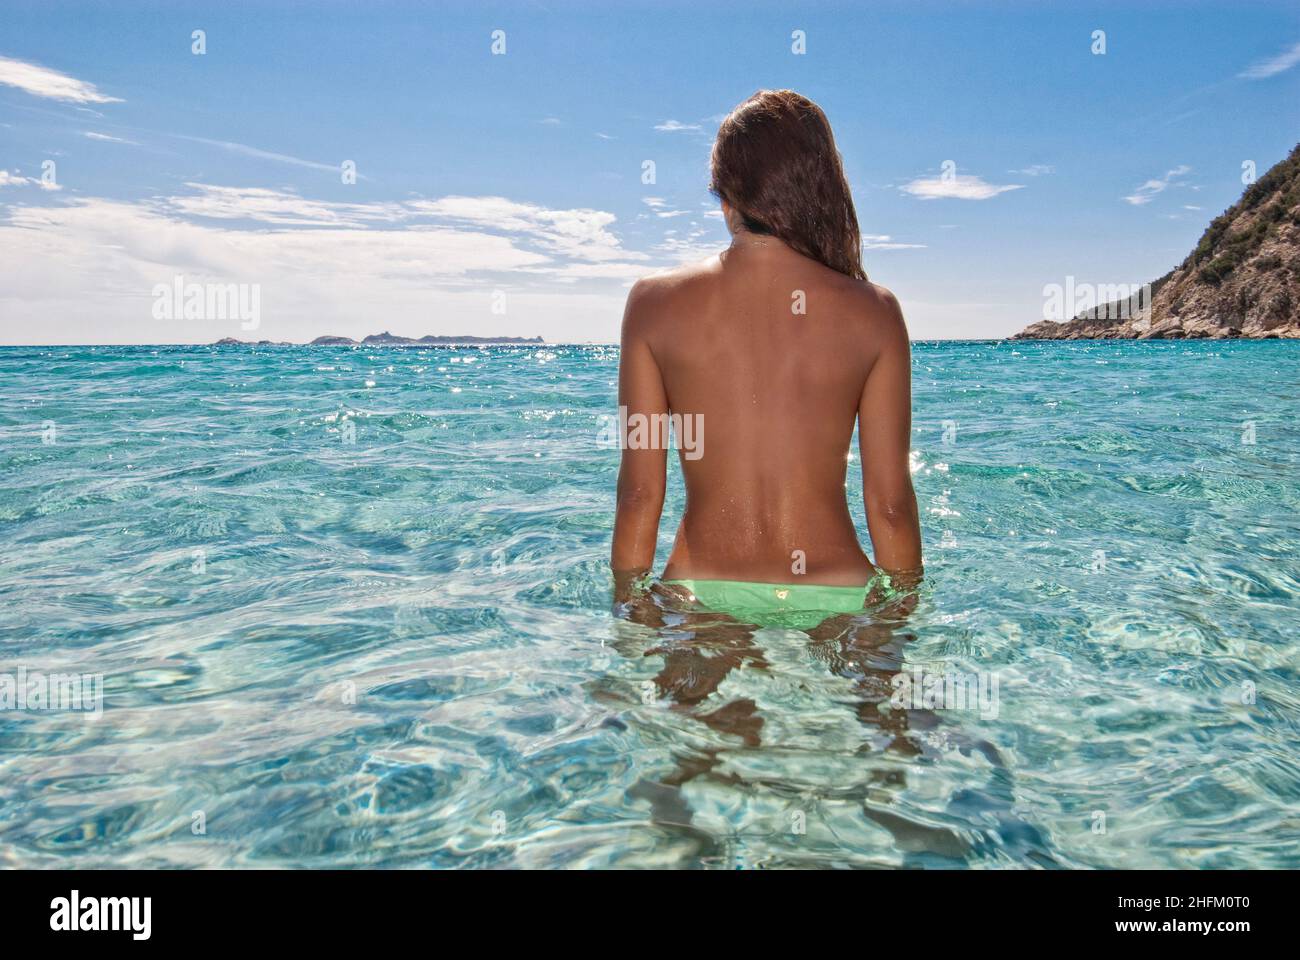 Junge Frau, die in den Horizont blickt und im kristallklaren Wasser auf Sardinien steht Stockfoto